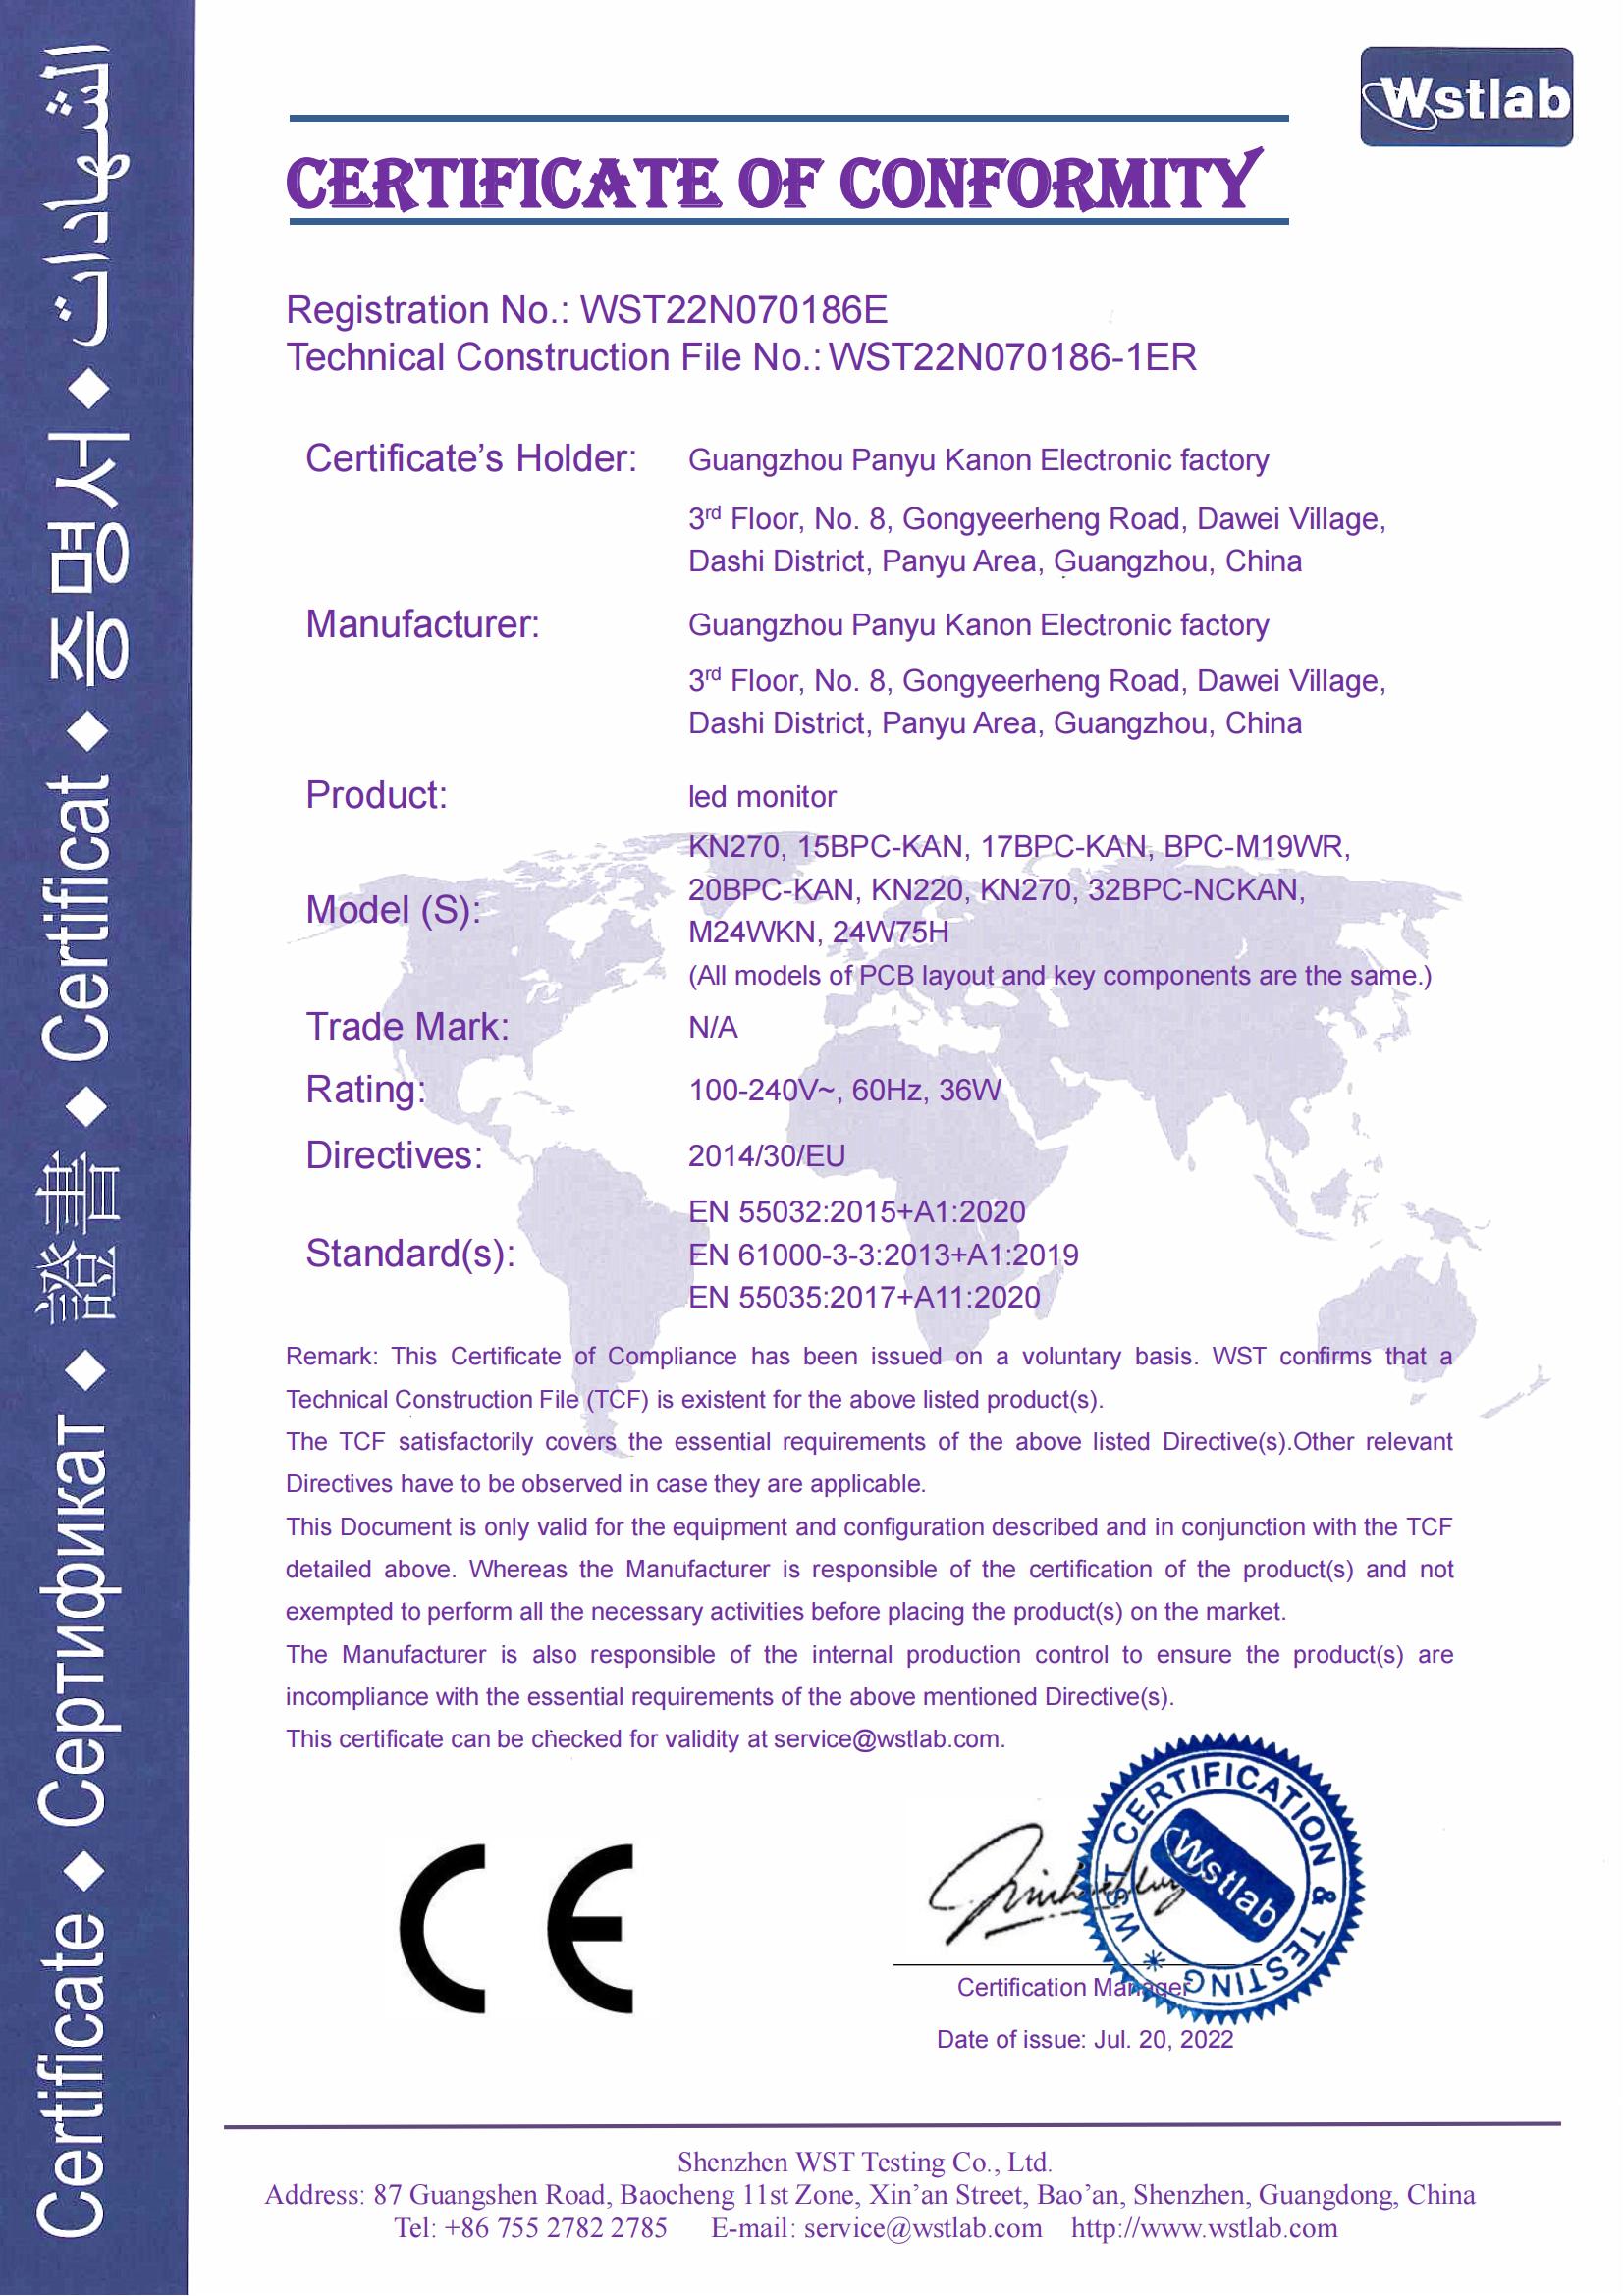 凯能液晶显示器-CE-EMC-证书-signed_00.jpg